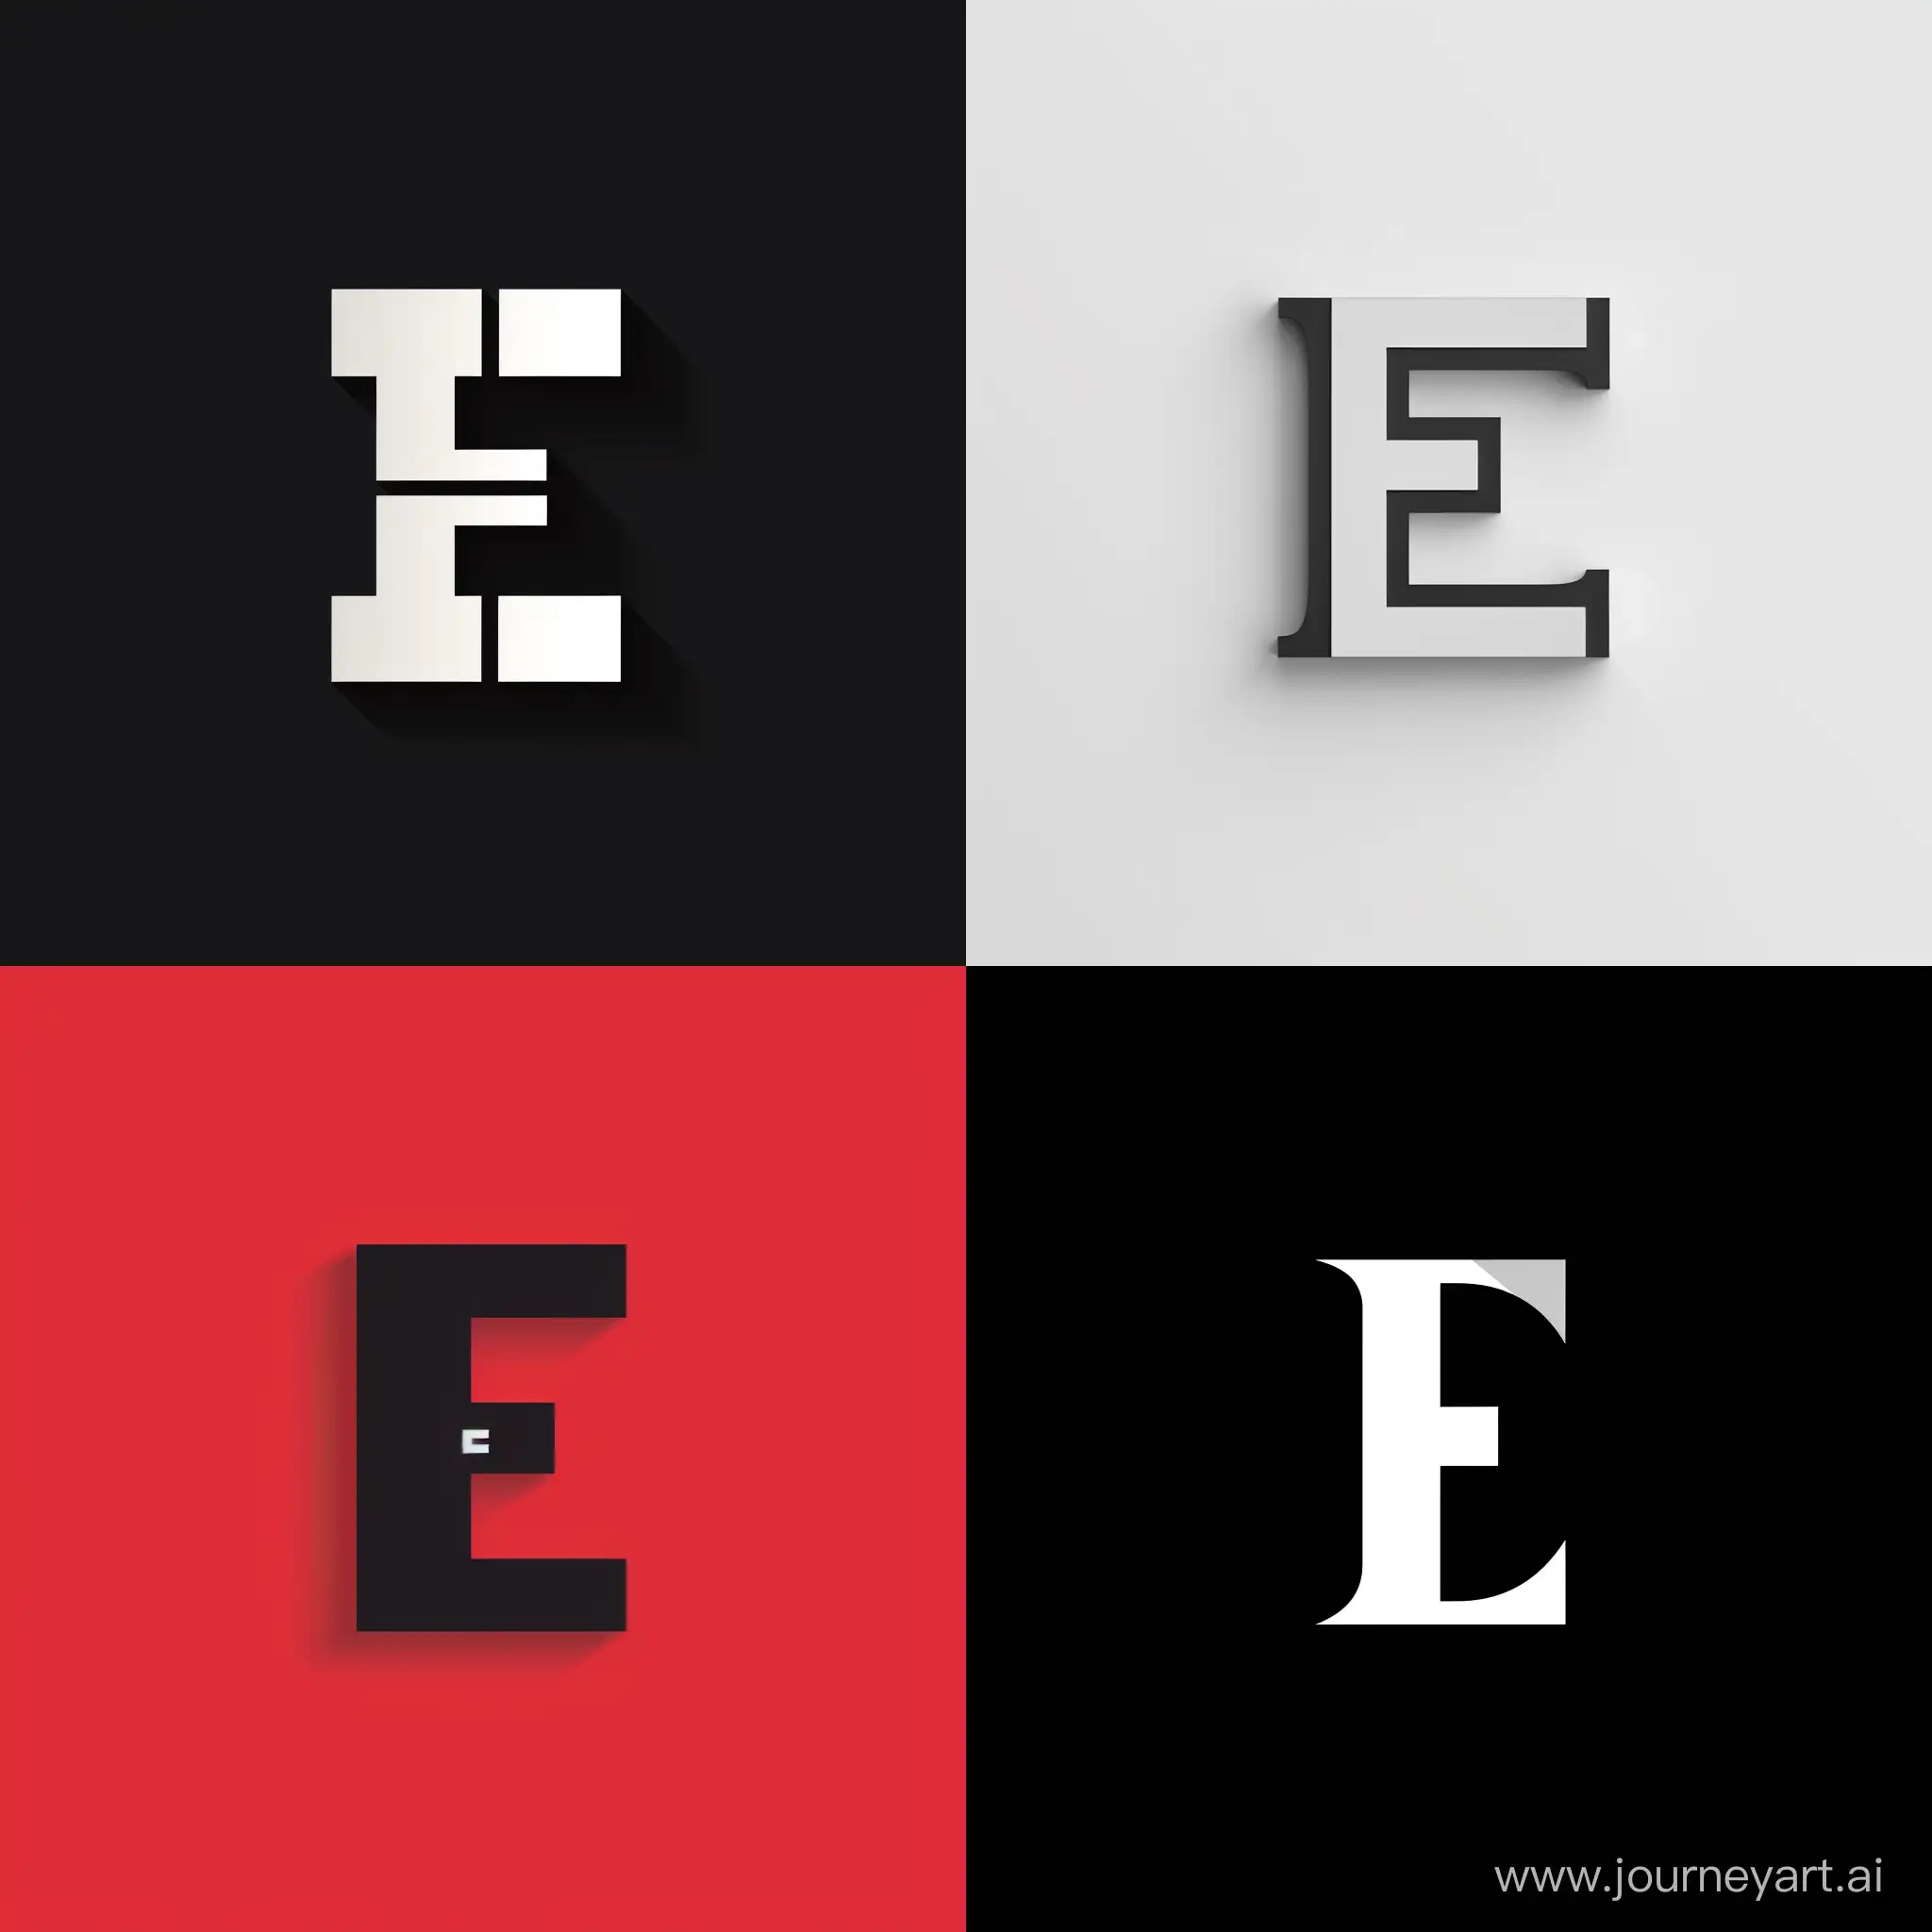 Привет, создай пожалуйста логотип с буквой Е на однородном фоне.